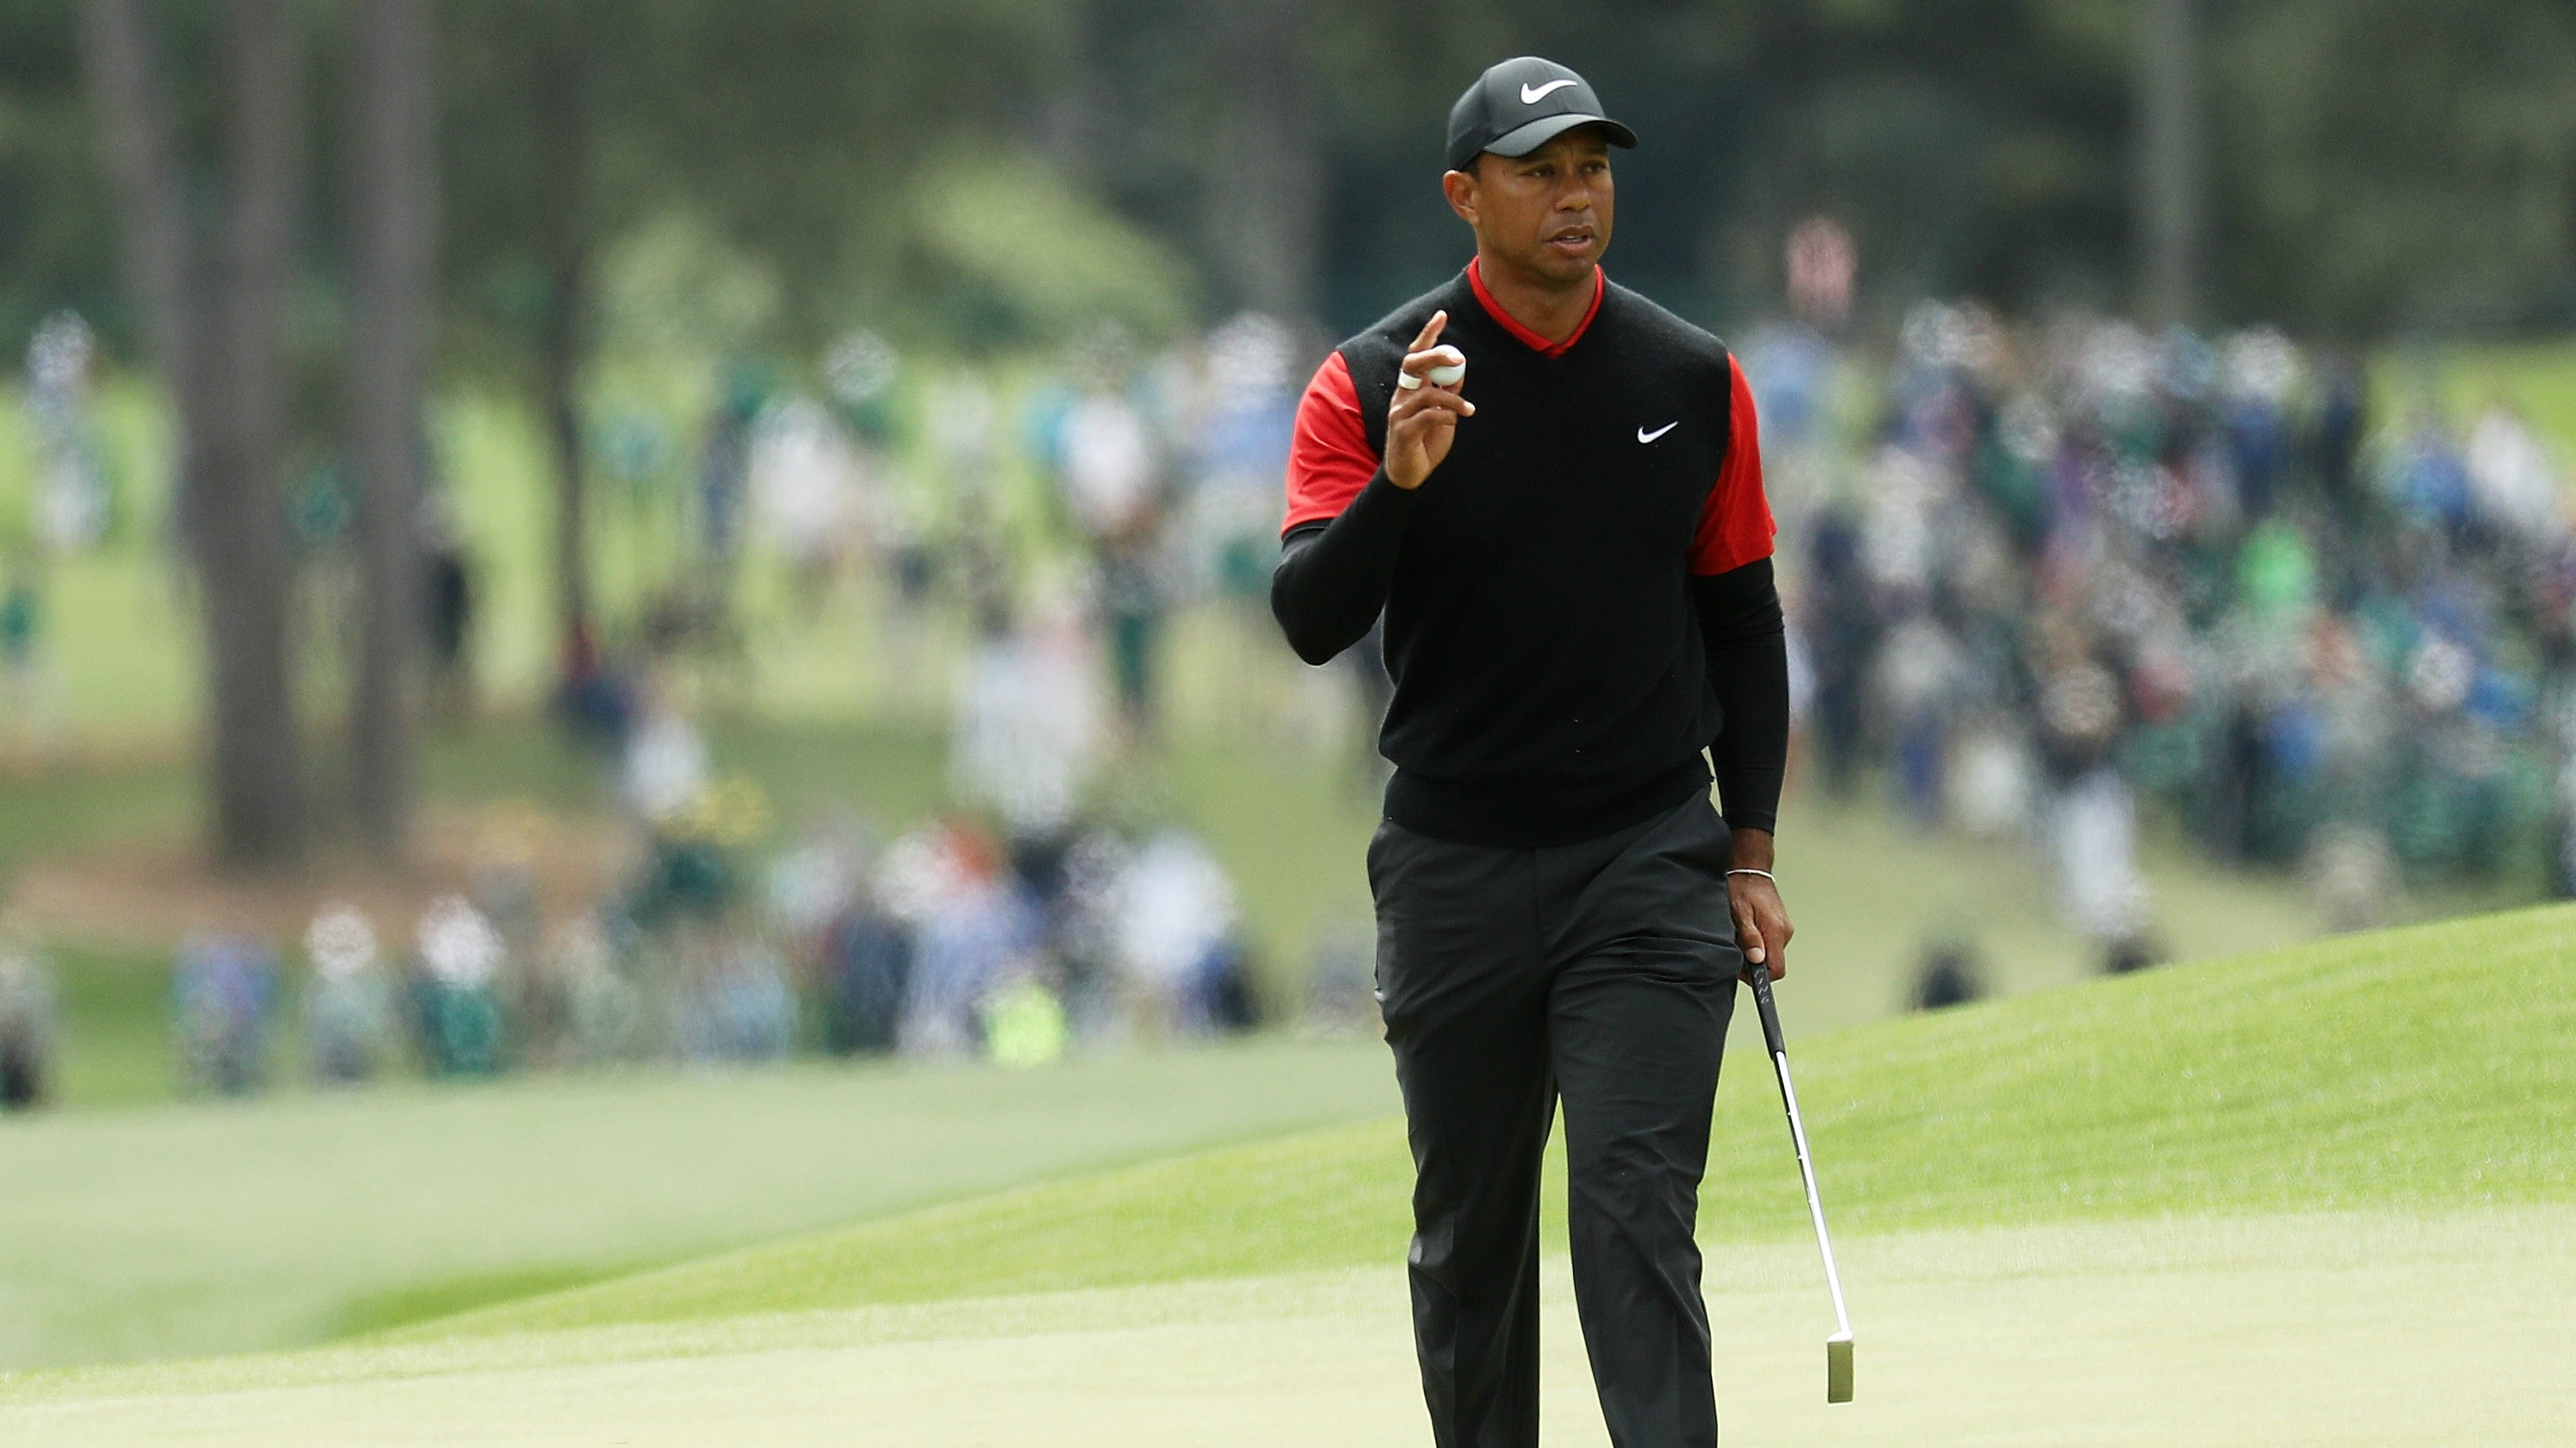 Tổng hợp những pha đánh bóng lỗi của 'Siêu hổ' Tiger Woods